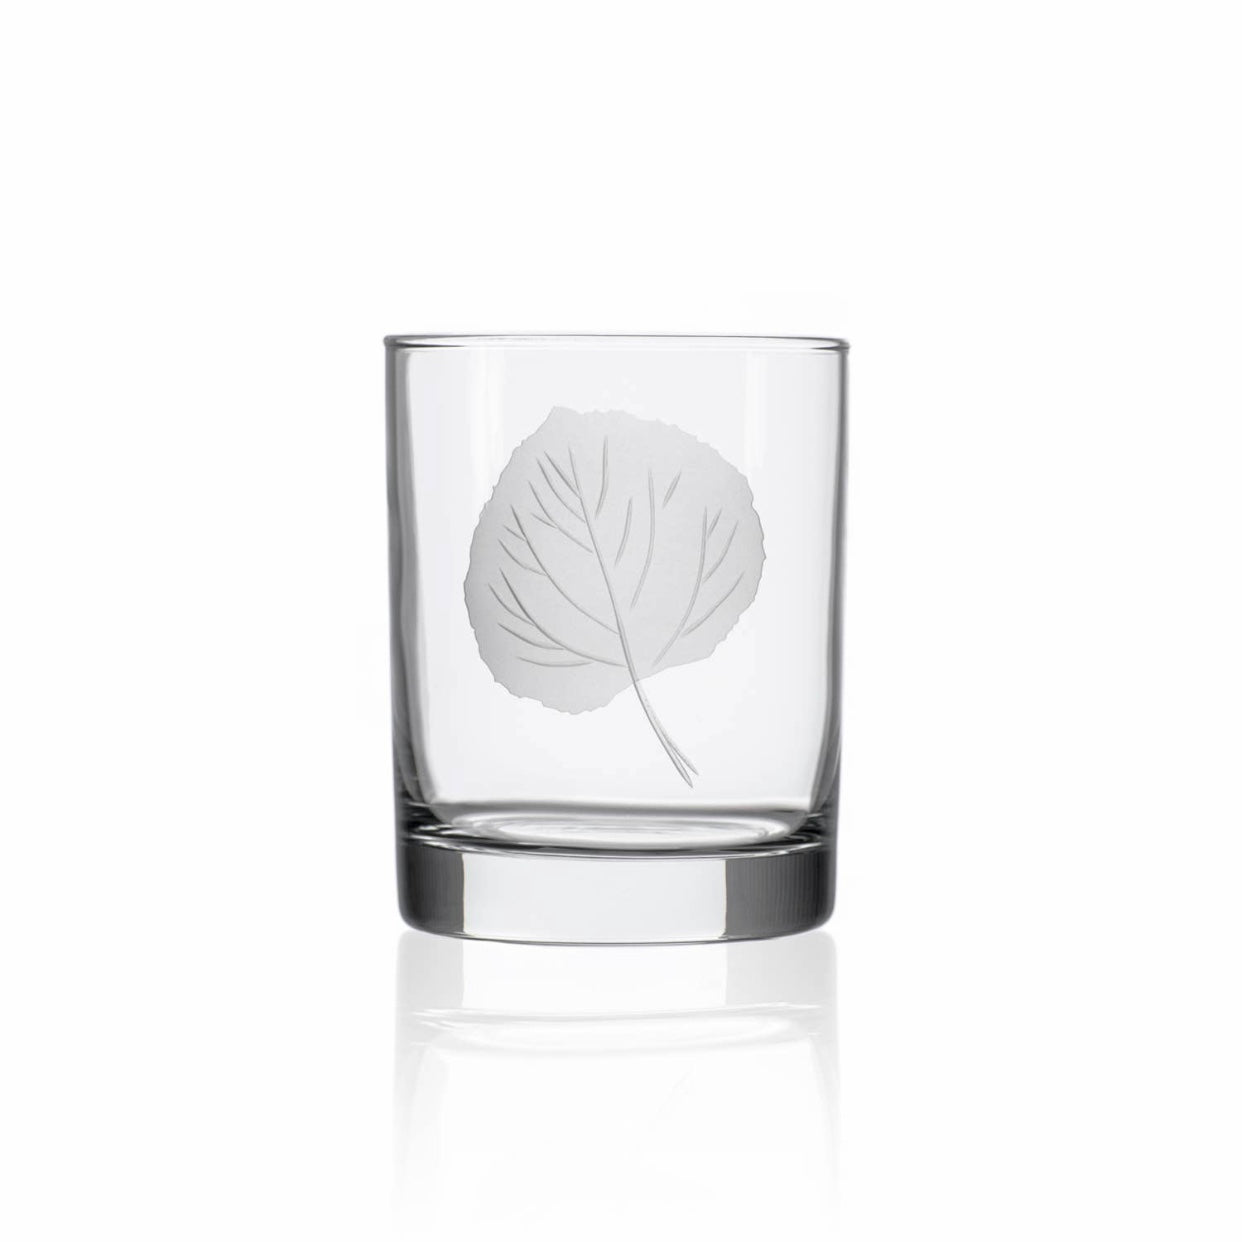 Rolf Glass aspen leaf glass